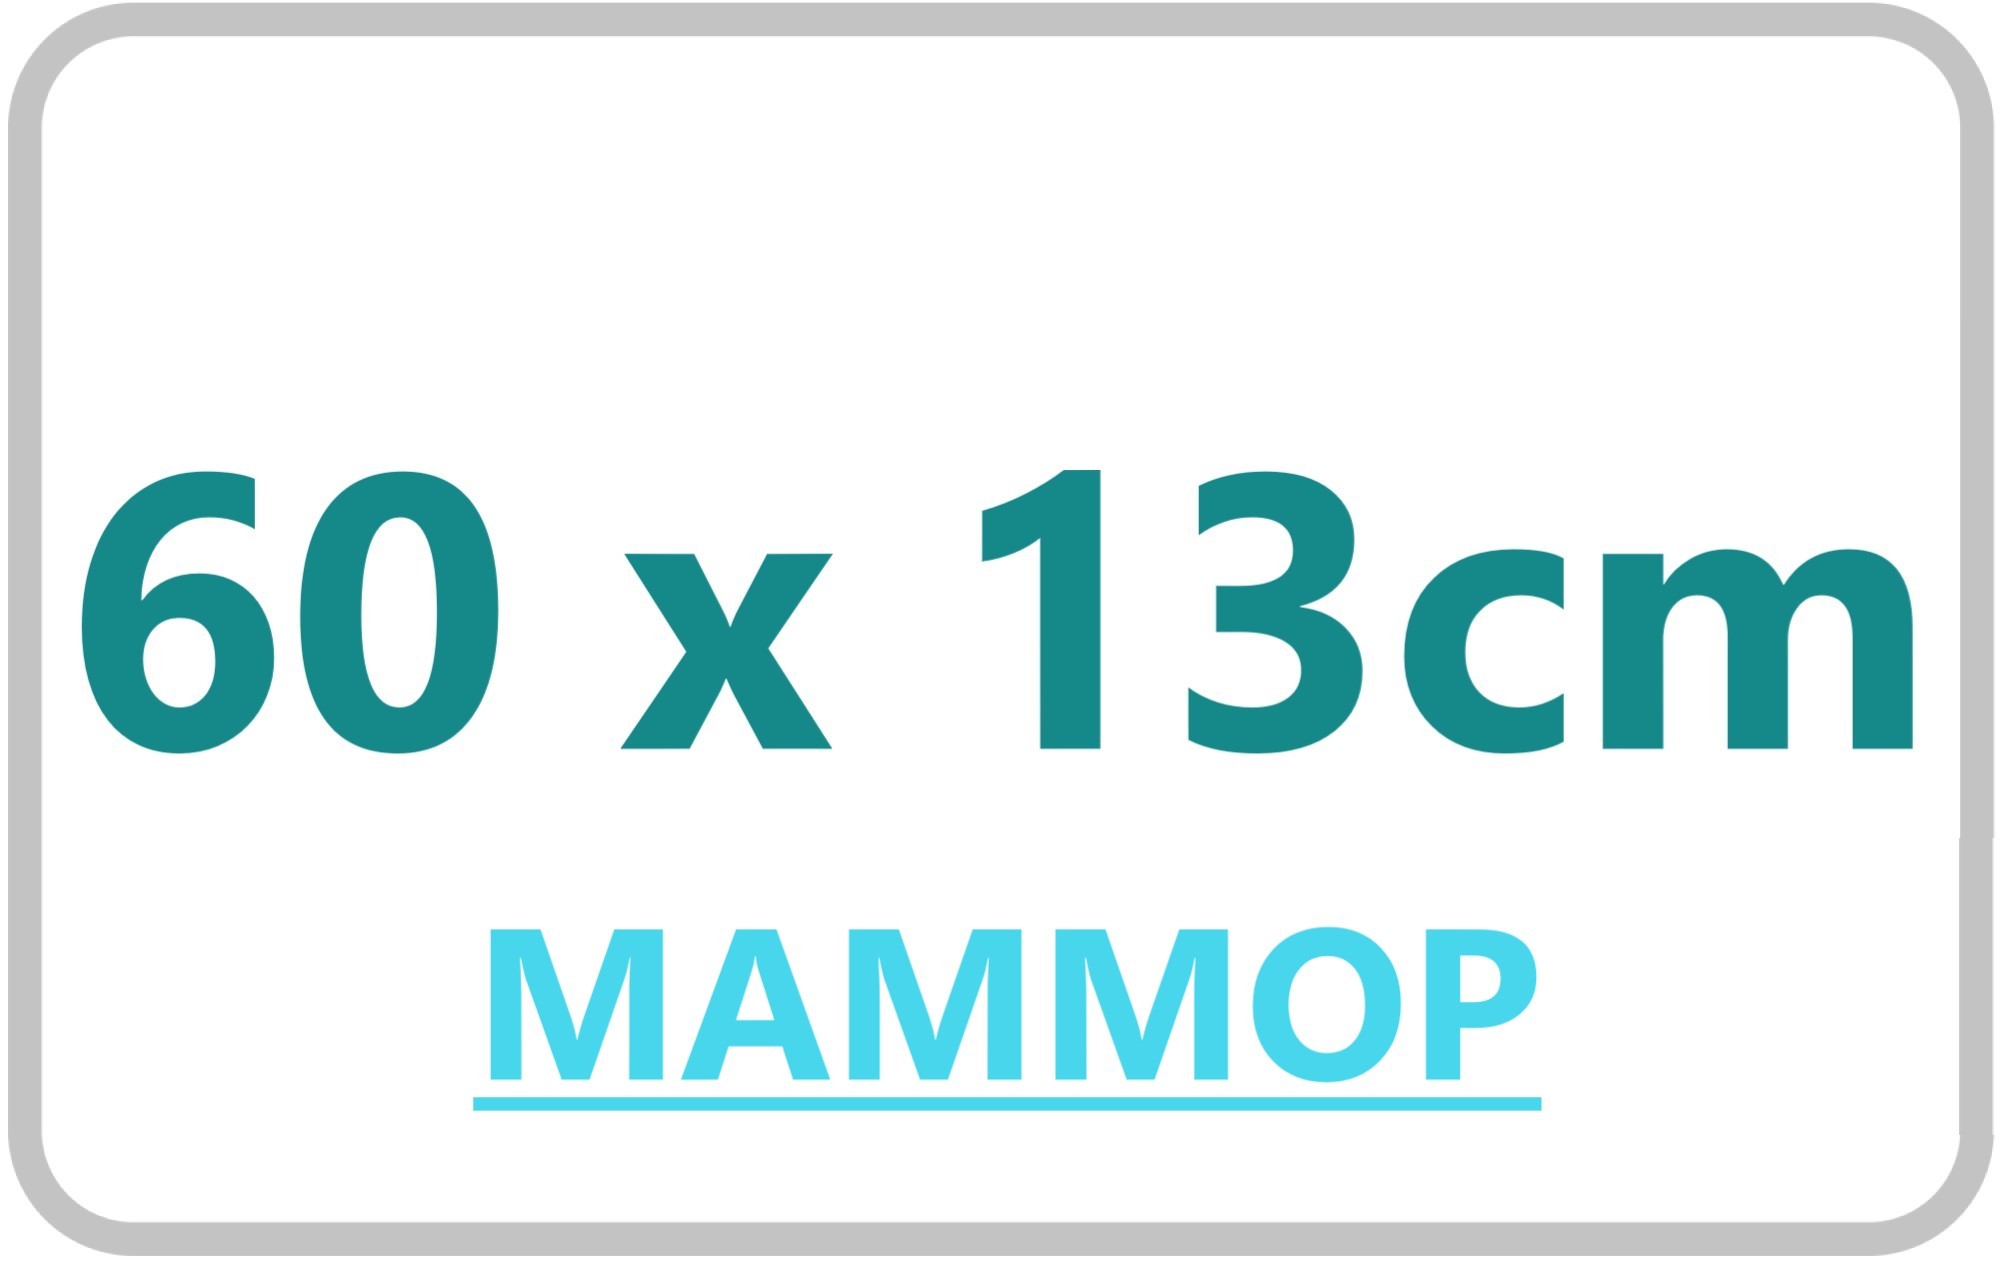 5._MAMMOP_60x13